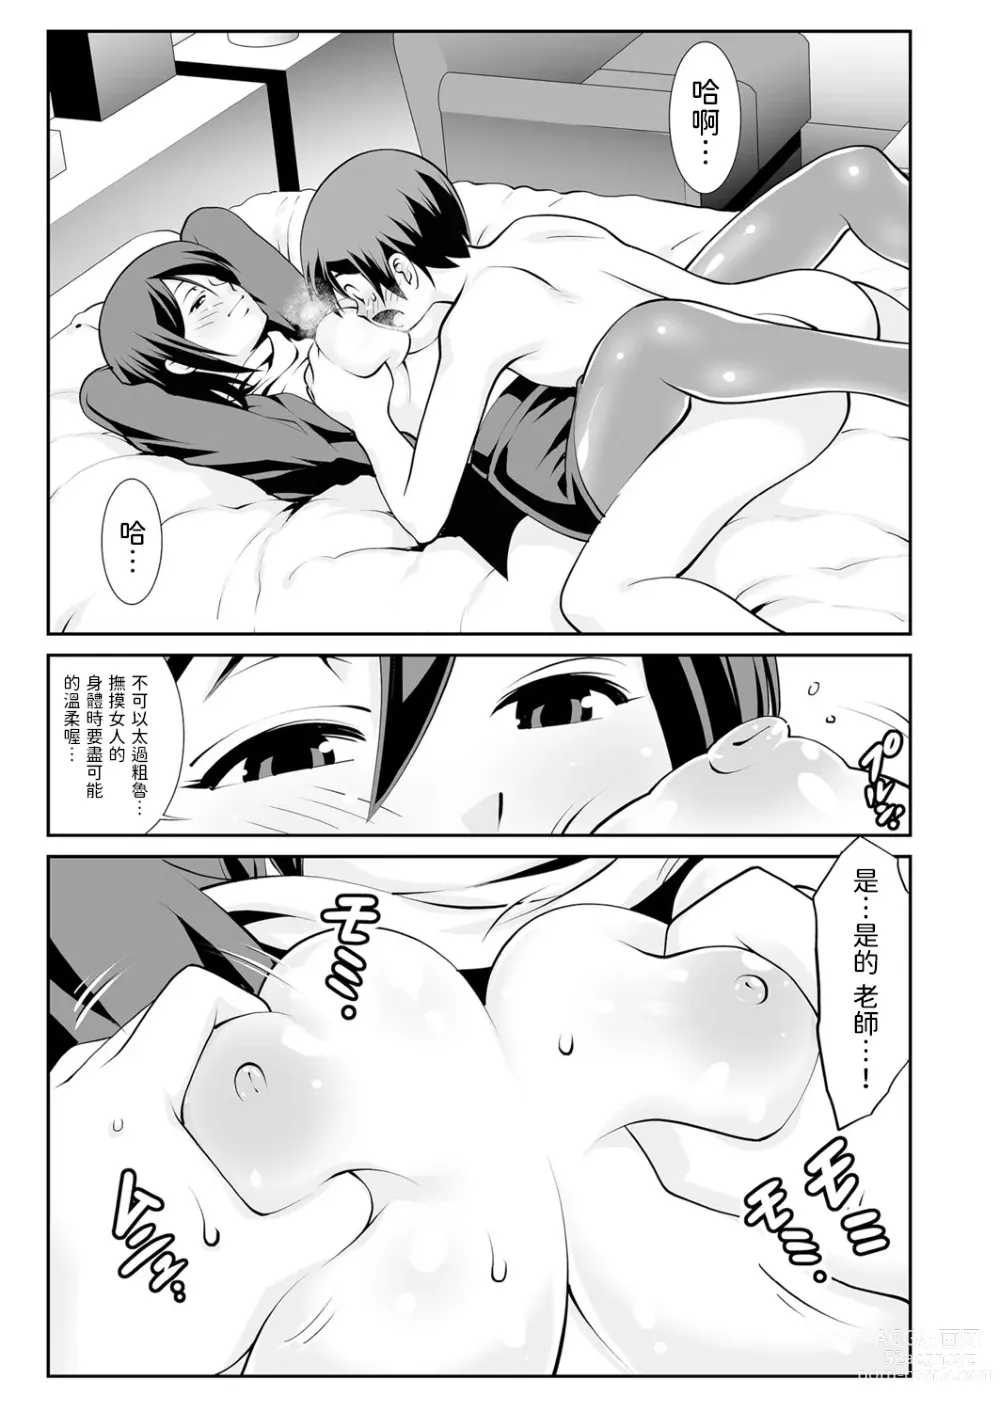 Page 7 of manga Sensei no Hiru to Yoru